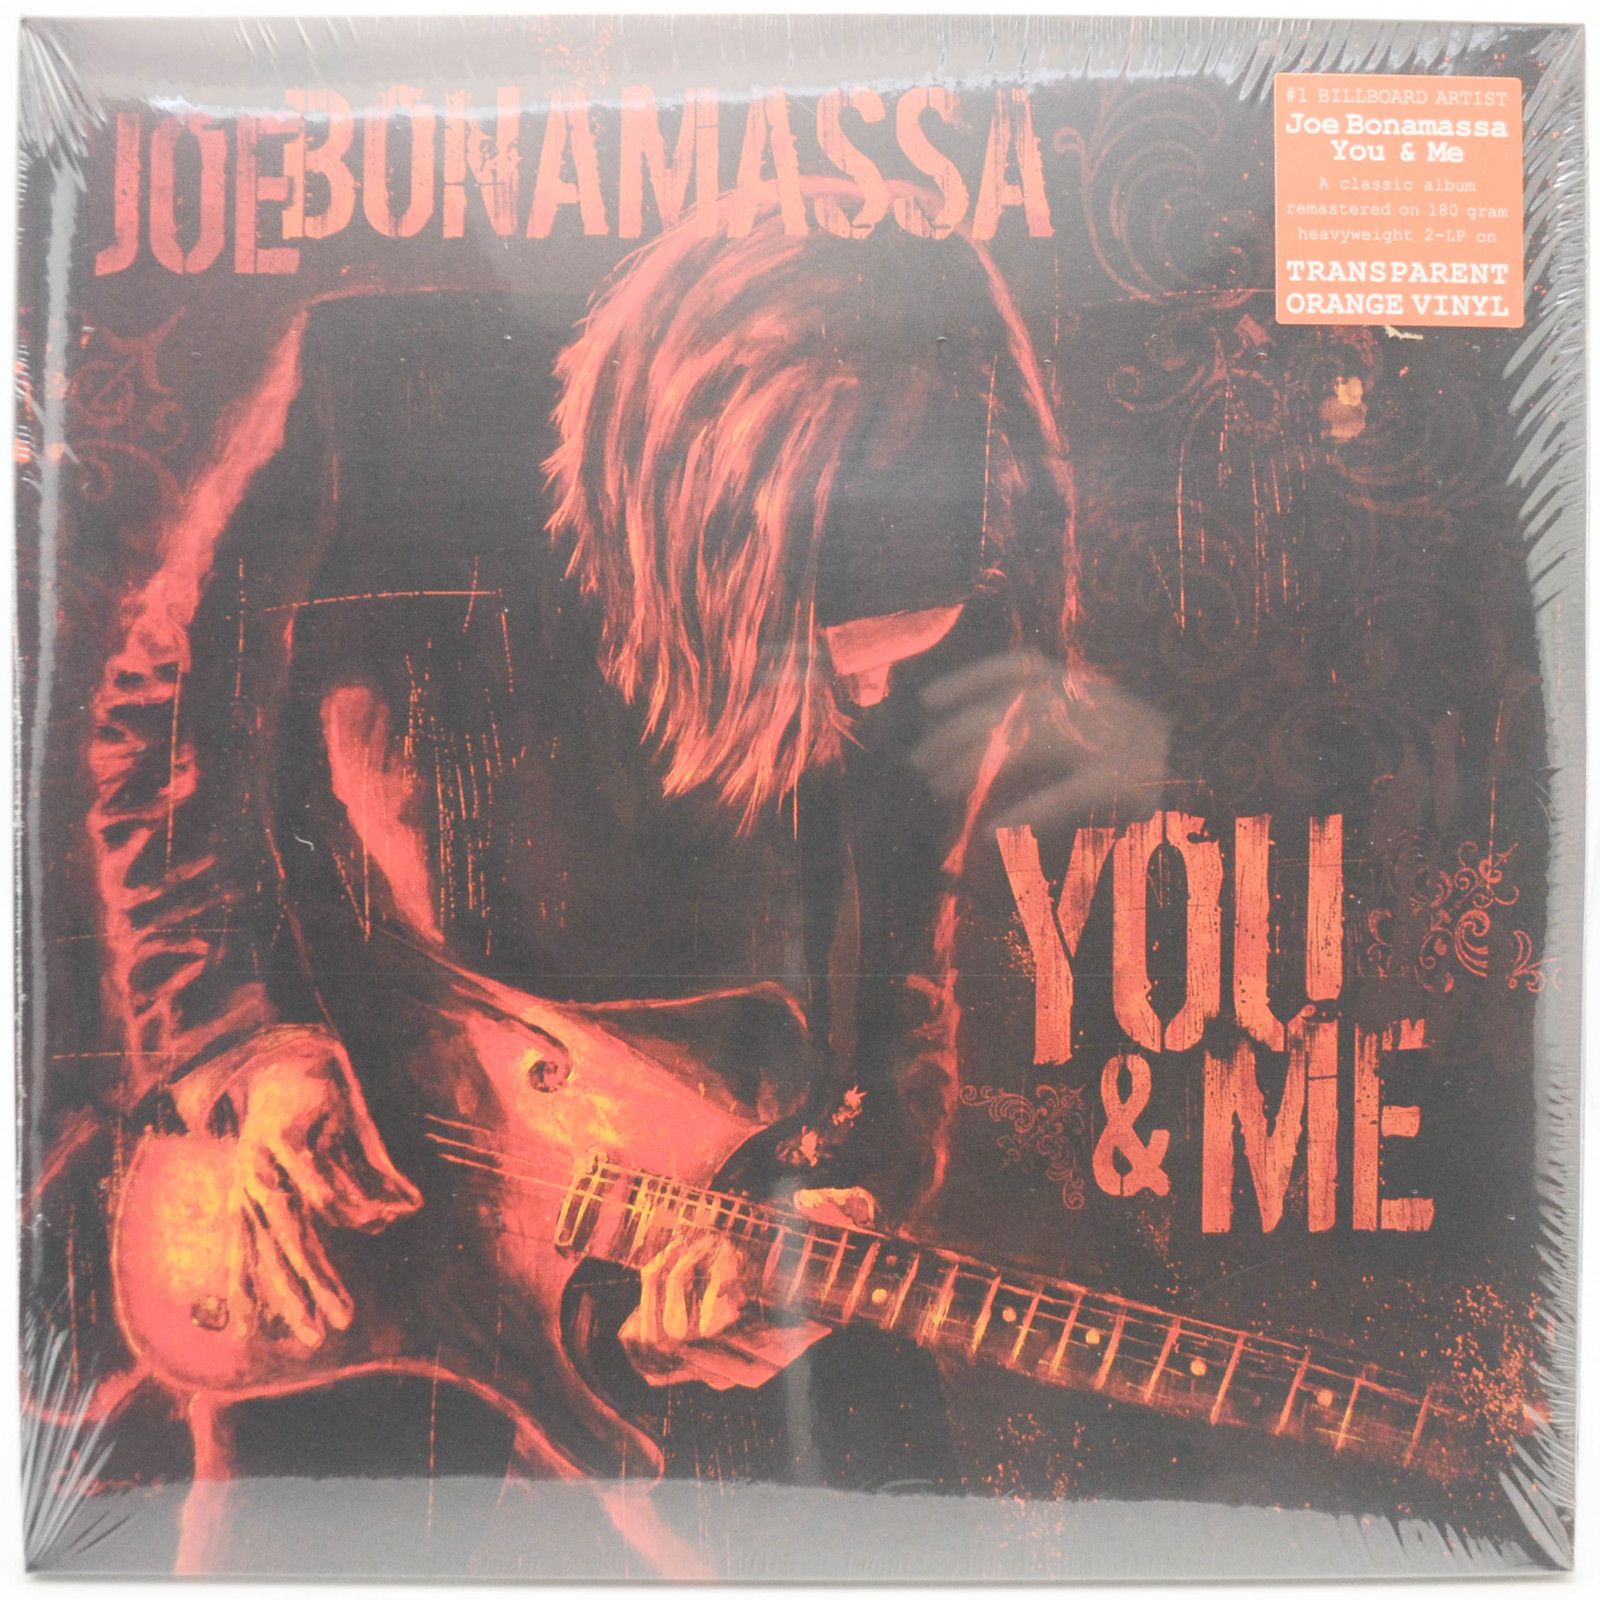 Joe Bonamassa — You & Me (2LP), 2006